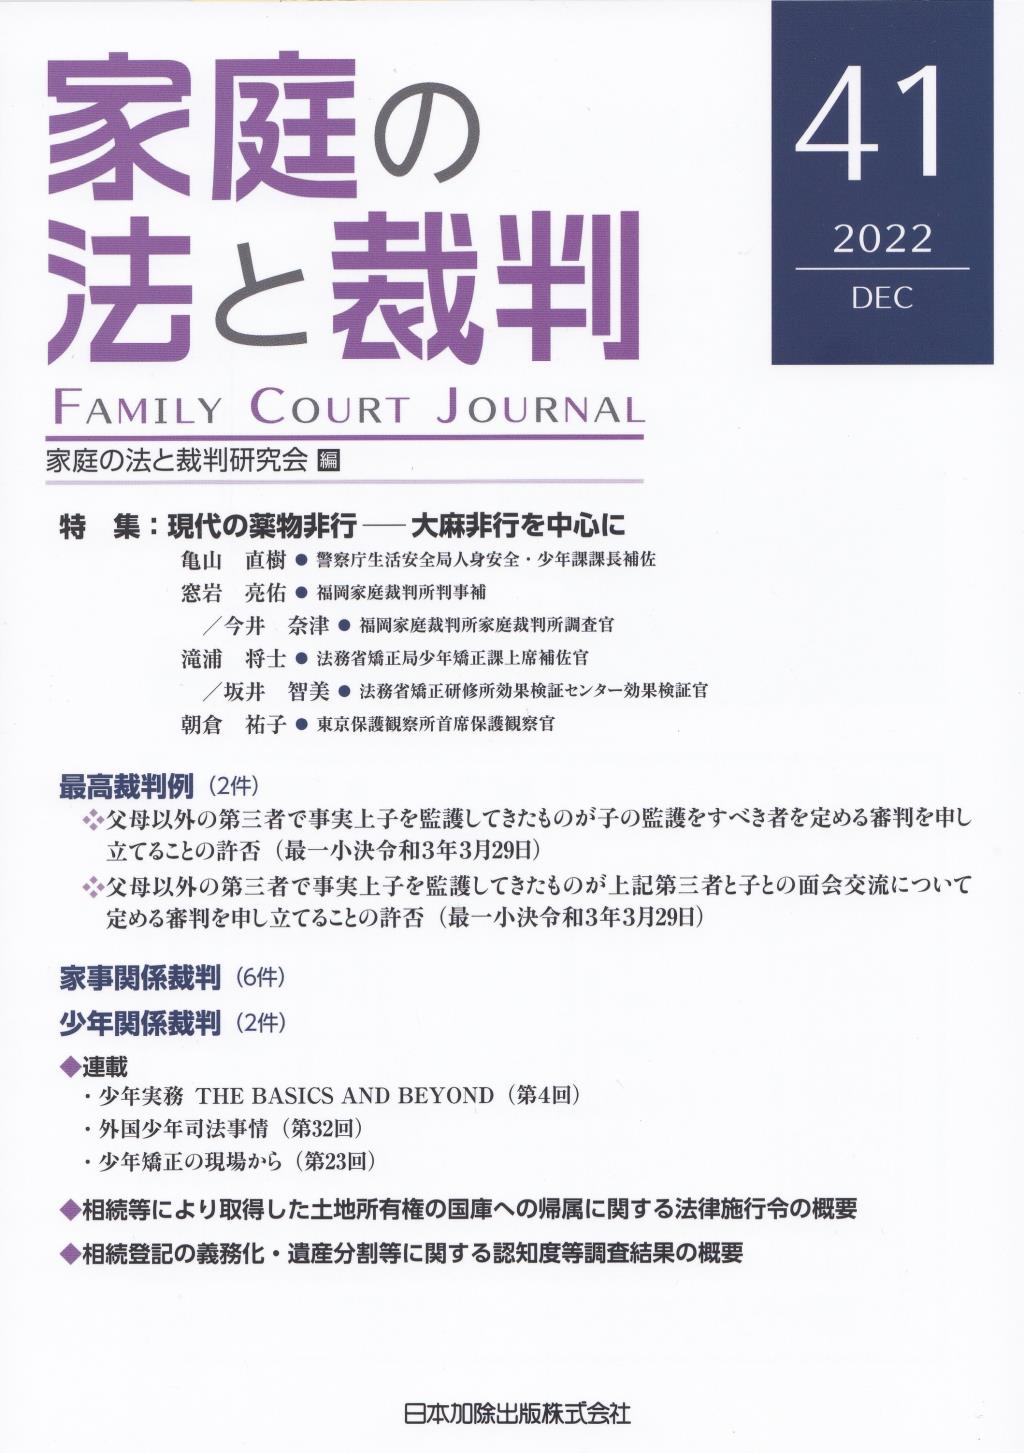 家庭の法と裁判 2022 DEC No.41